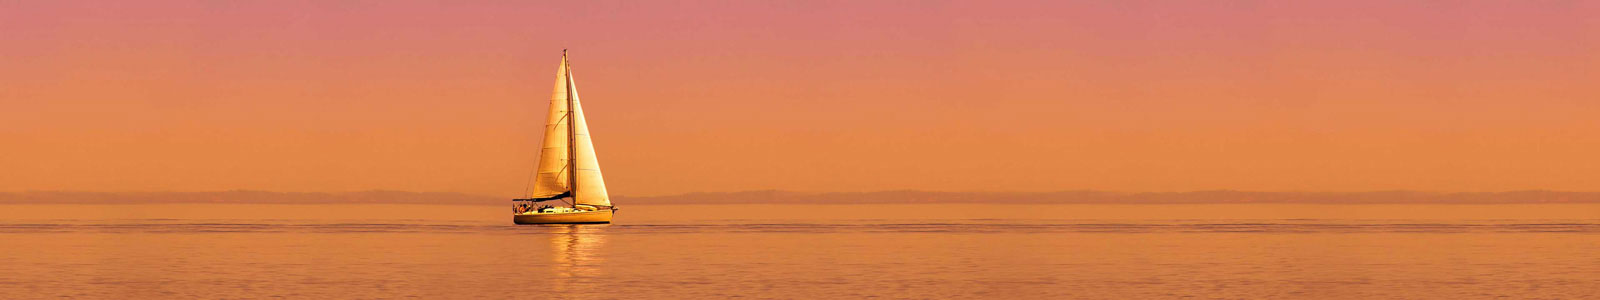 №4410 - Одинокая яхта в море на закате солнца